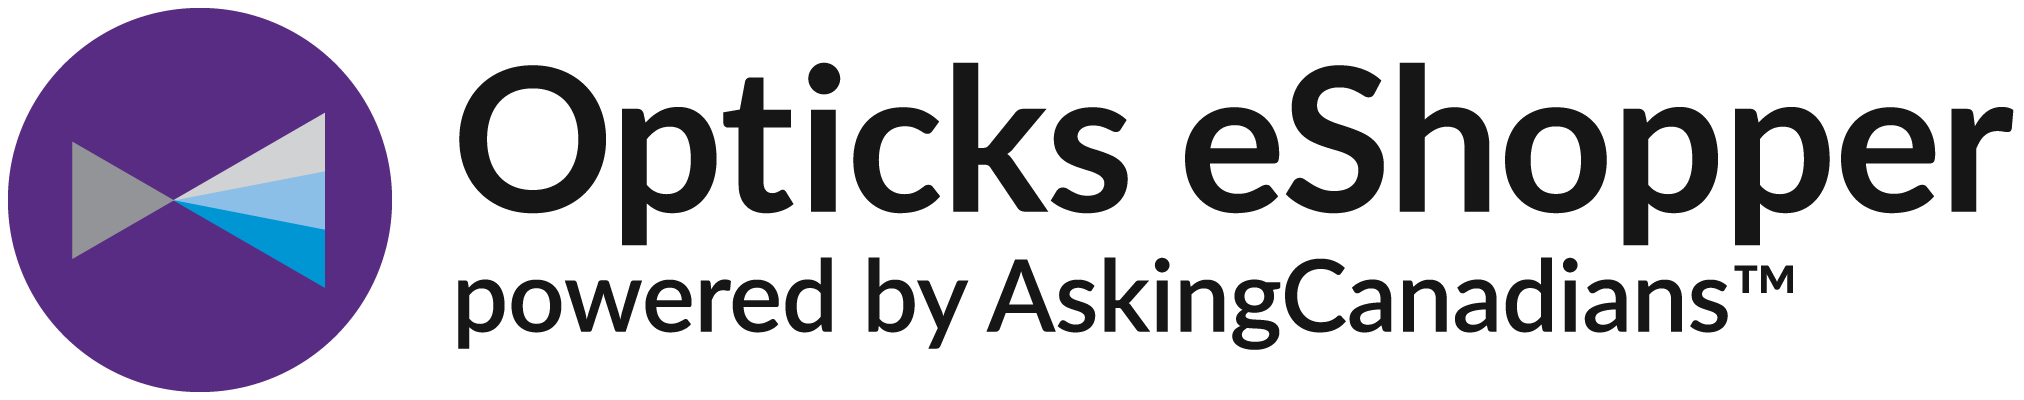 Opticks eShopper by AskingCanadians